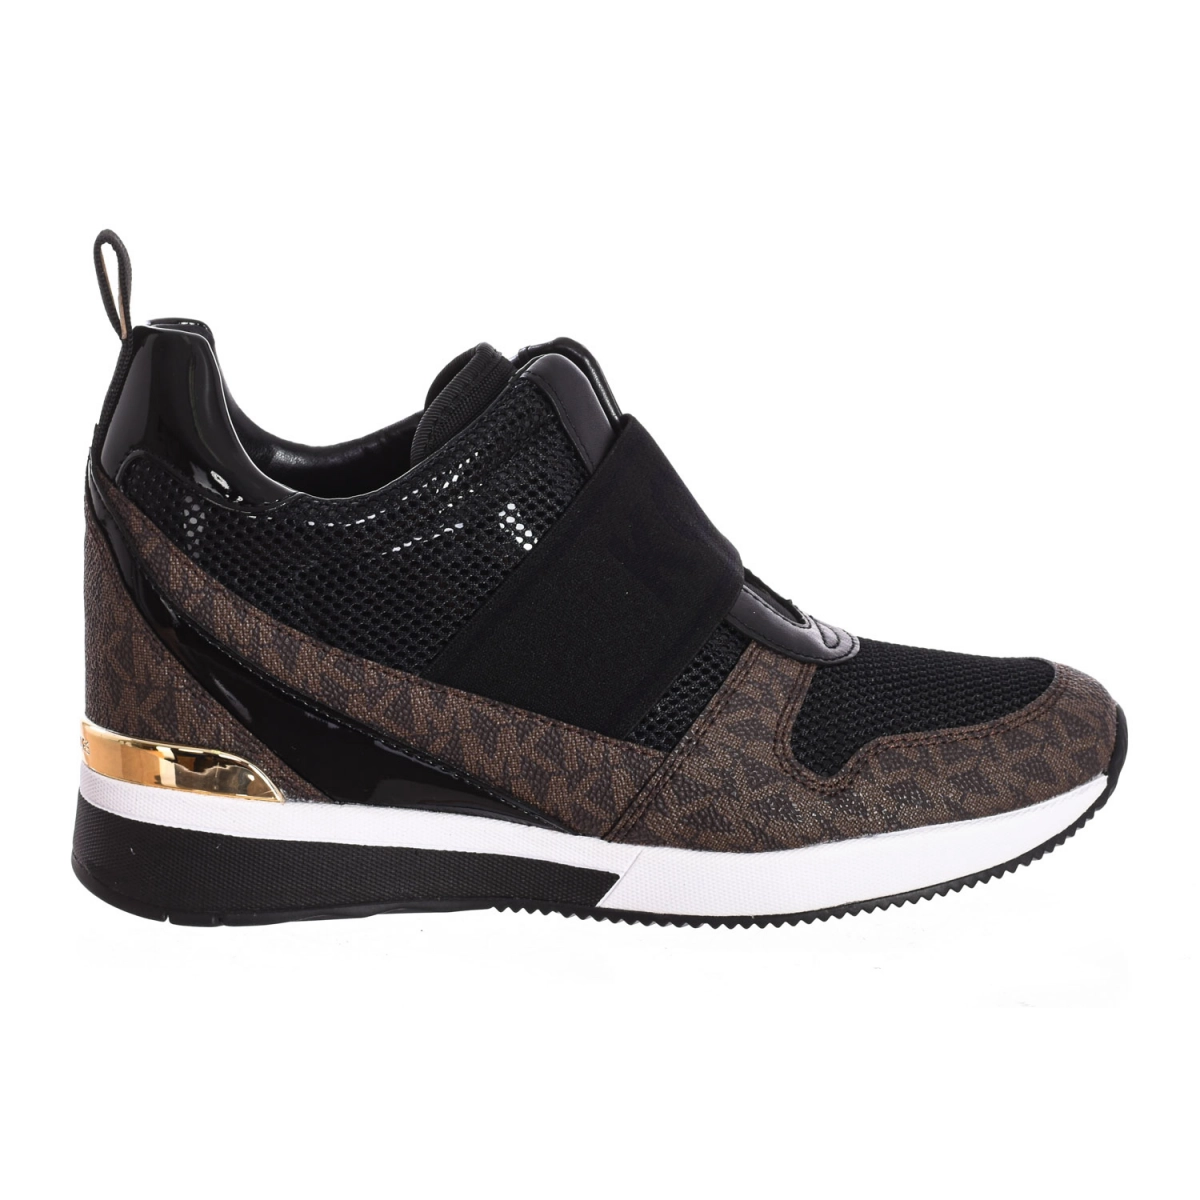 Zapatilla Sneaker Maven sin cordones con cuero Michael Kors F2MVFP2A mujer Talla: 36.5 Color: Negro